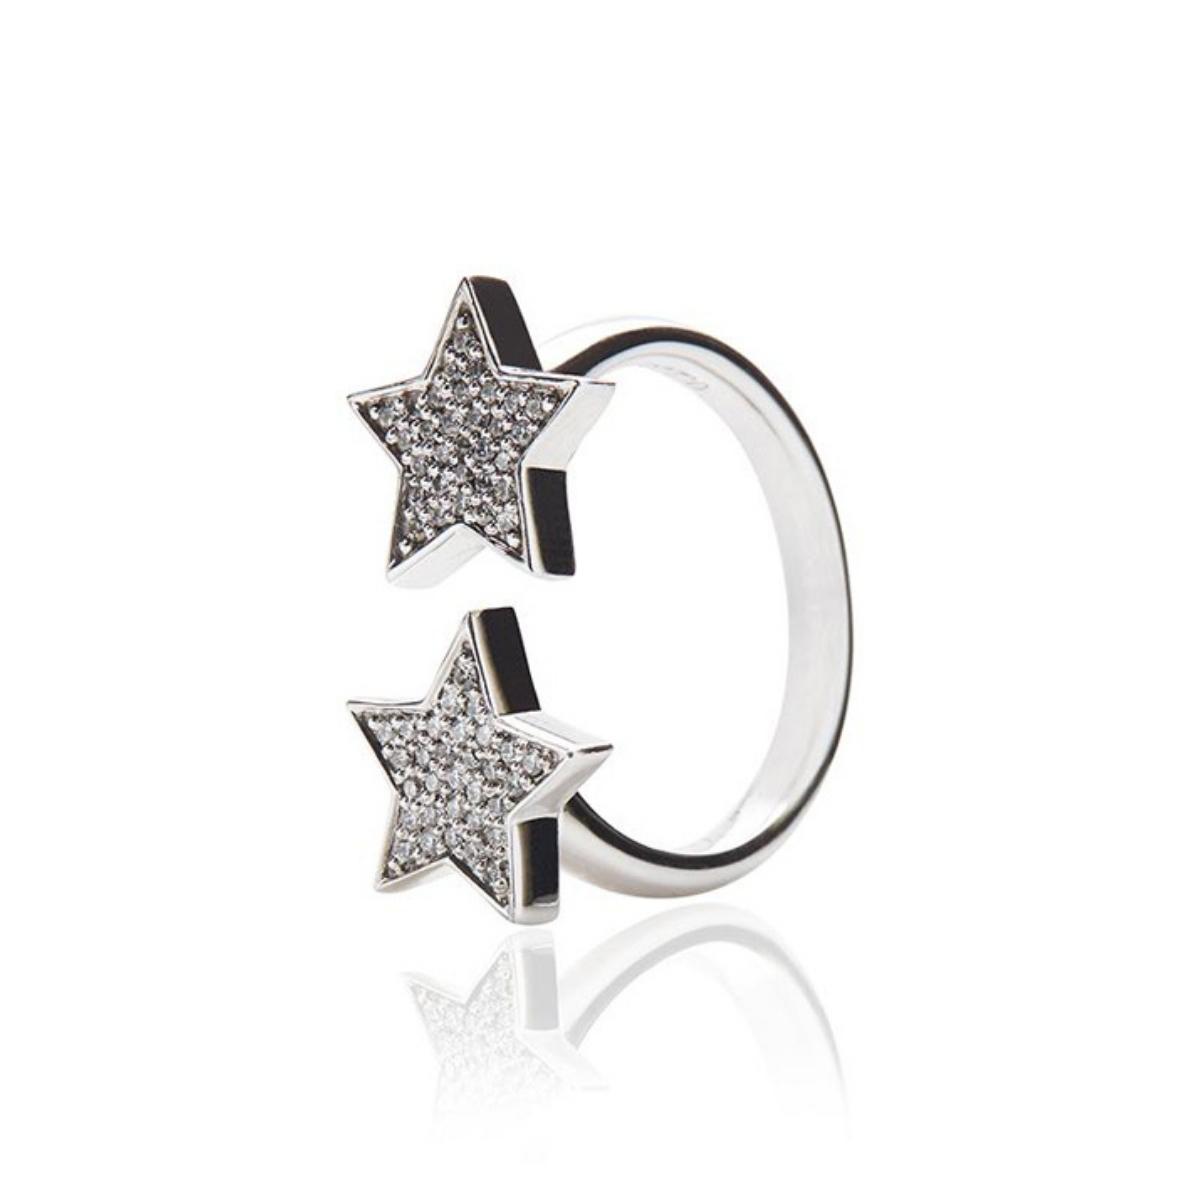 STASIA Two Star Diamond Ring